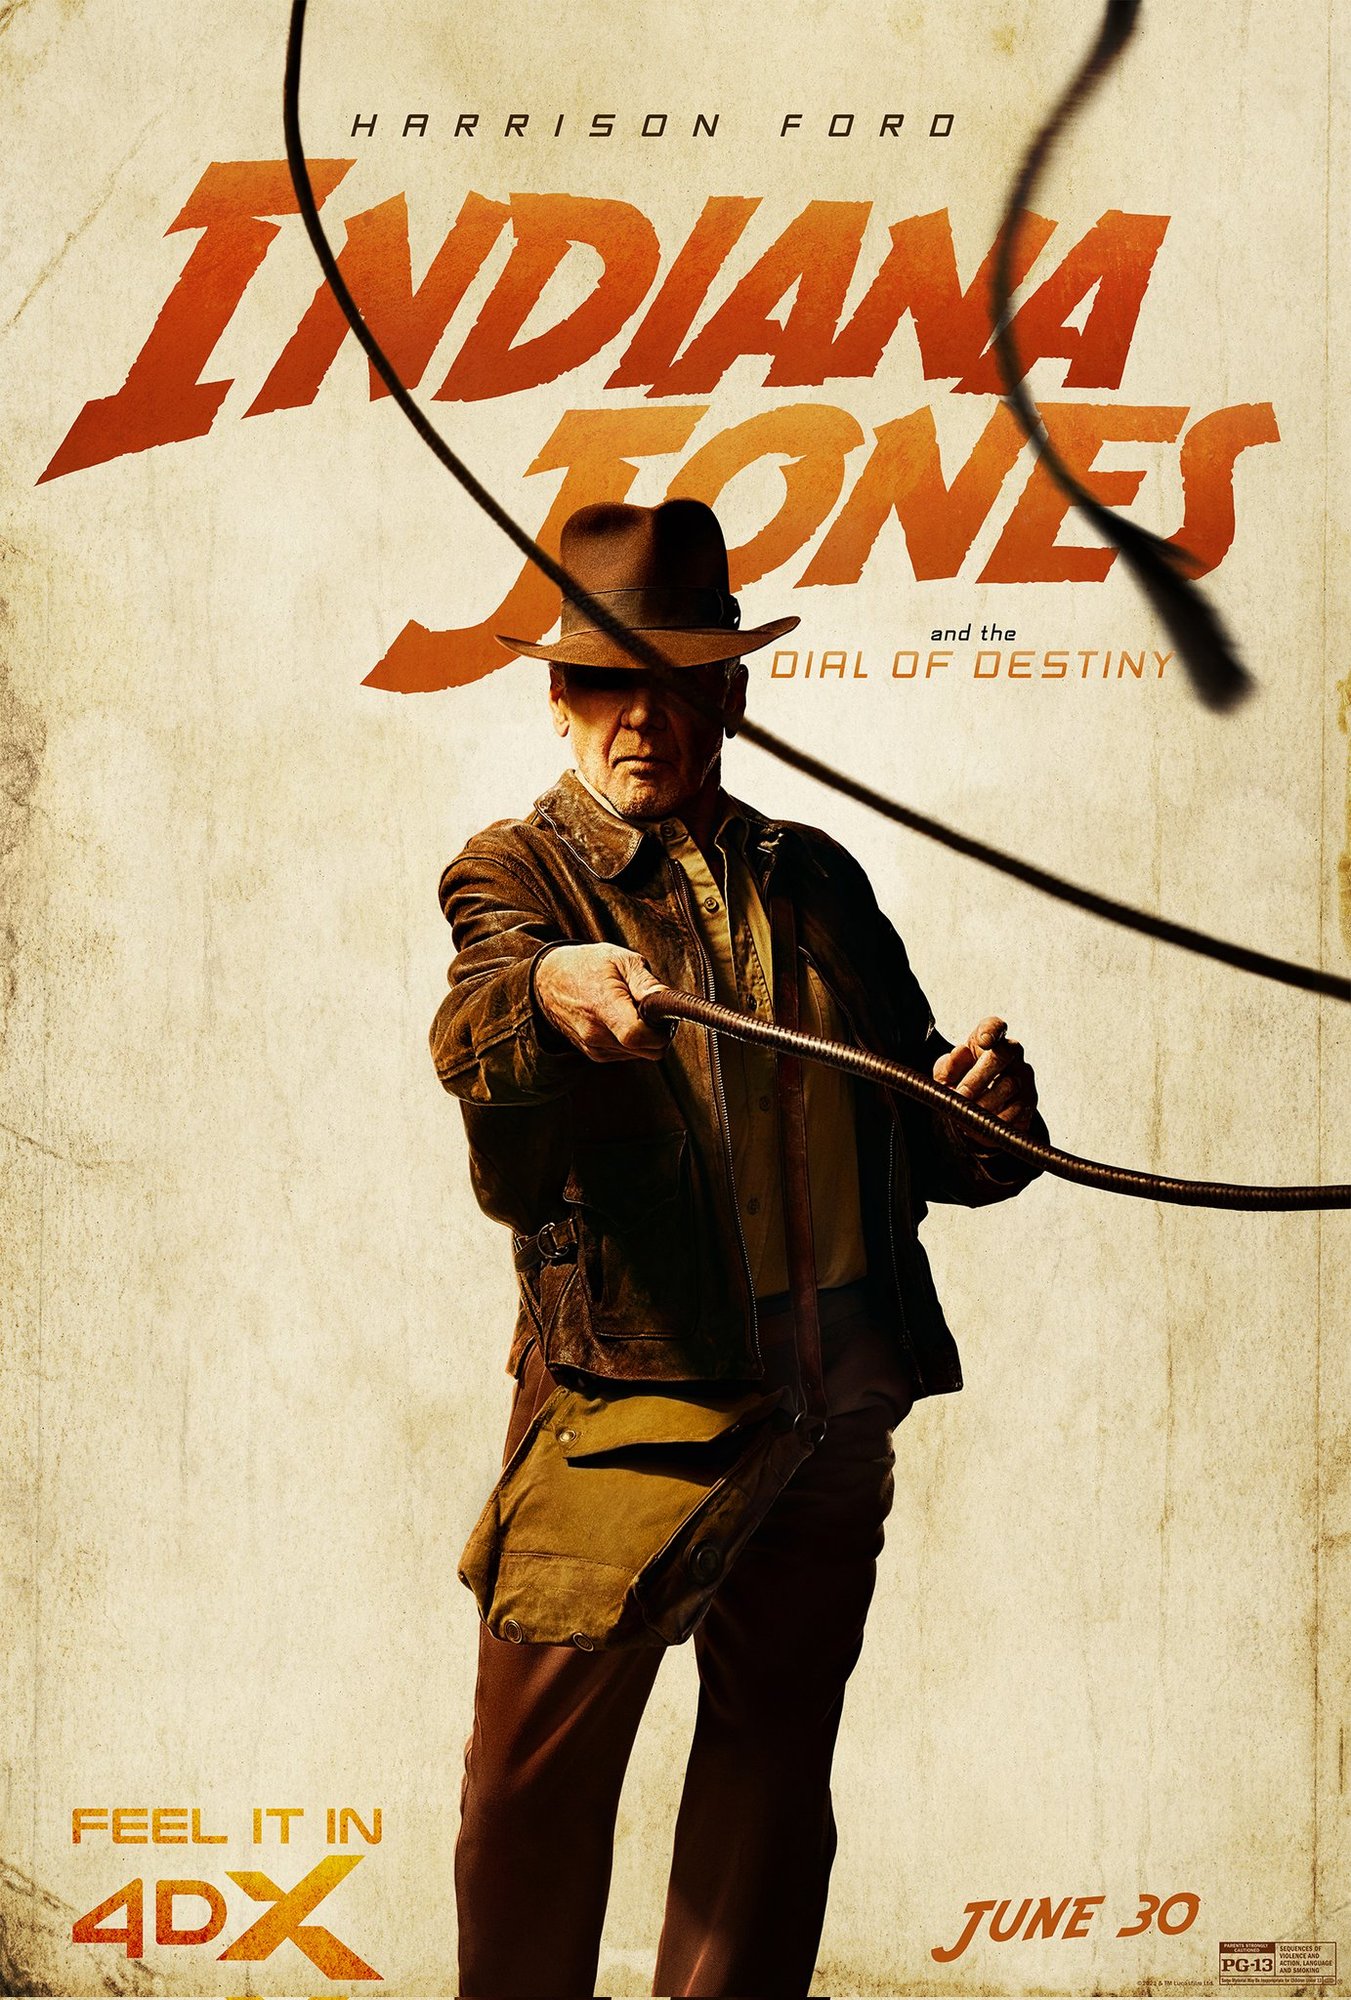 Oferta: Indiana Jones en Blu-ray con sombrero y un 10% de descuento